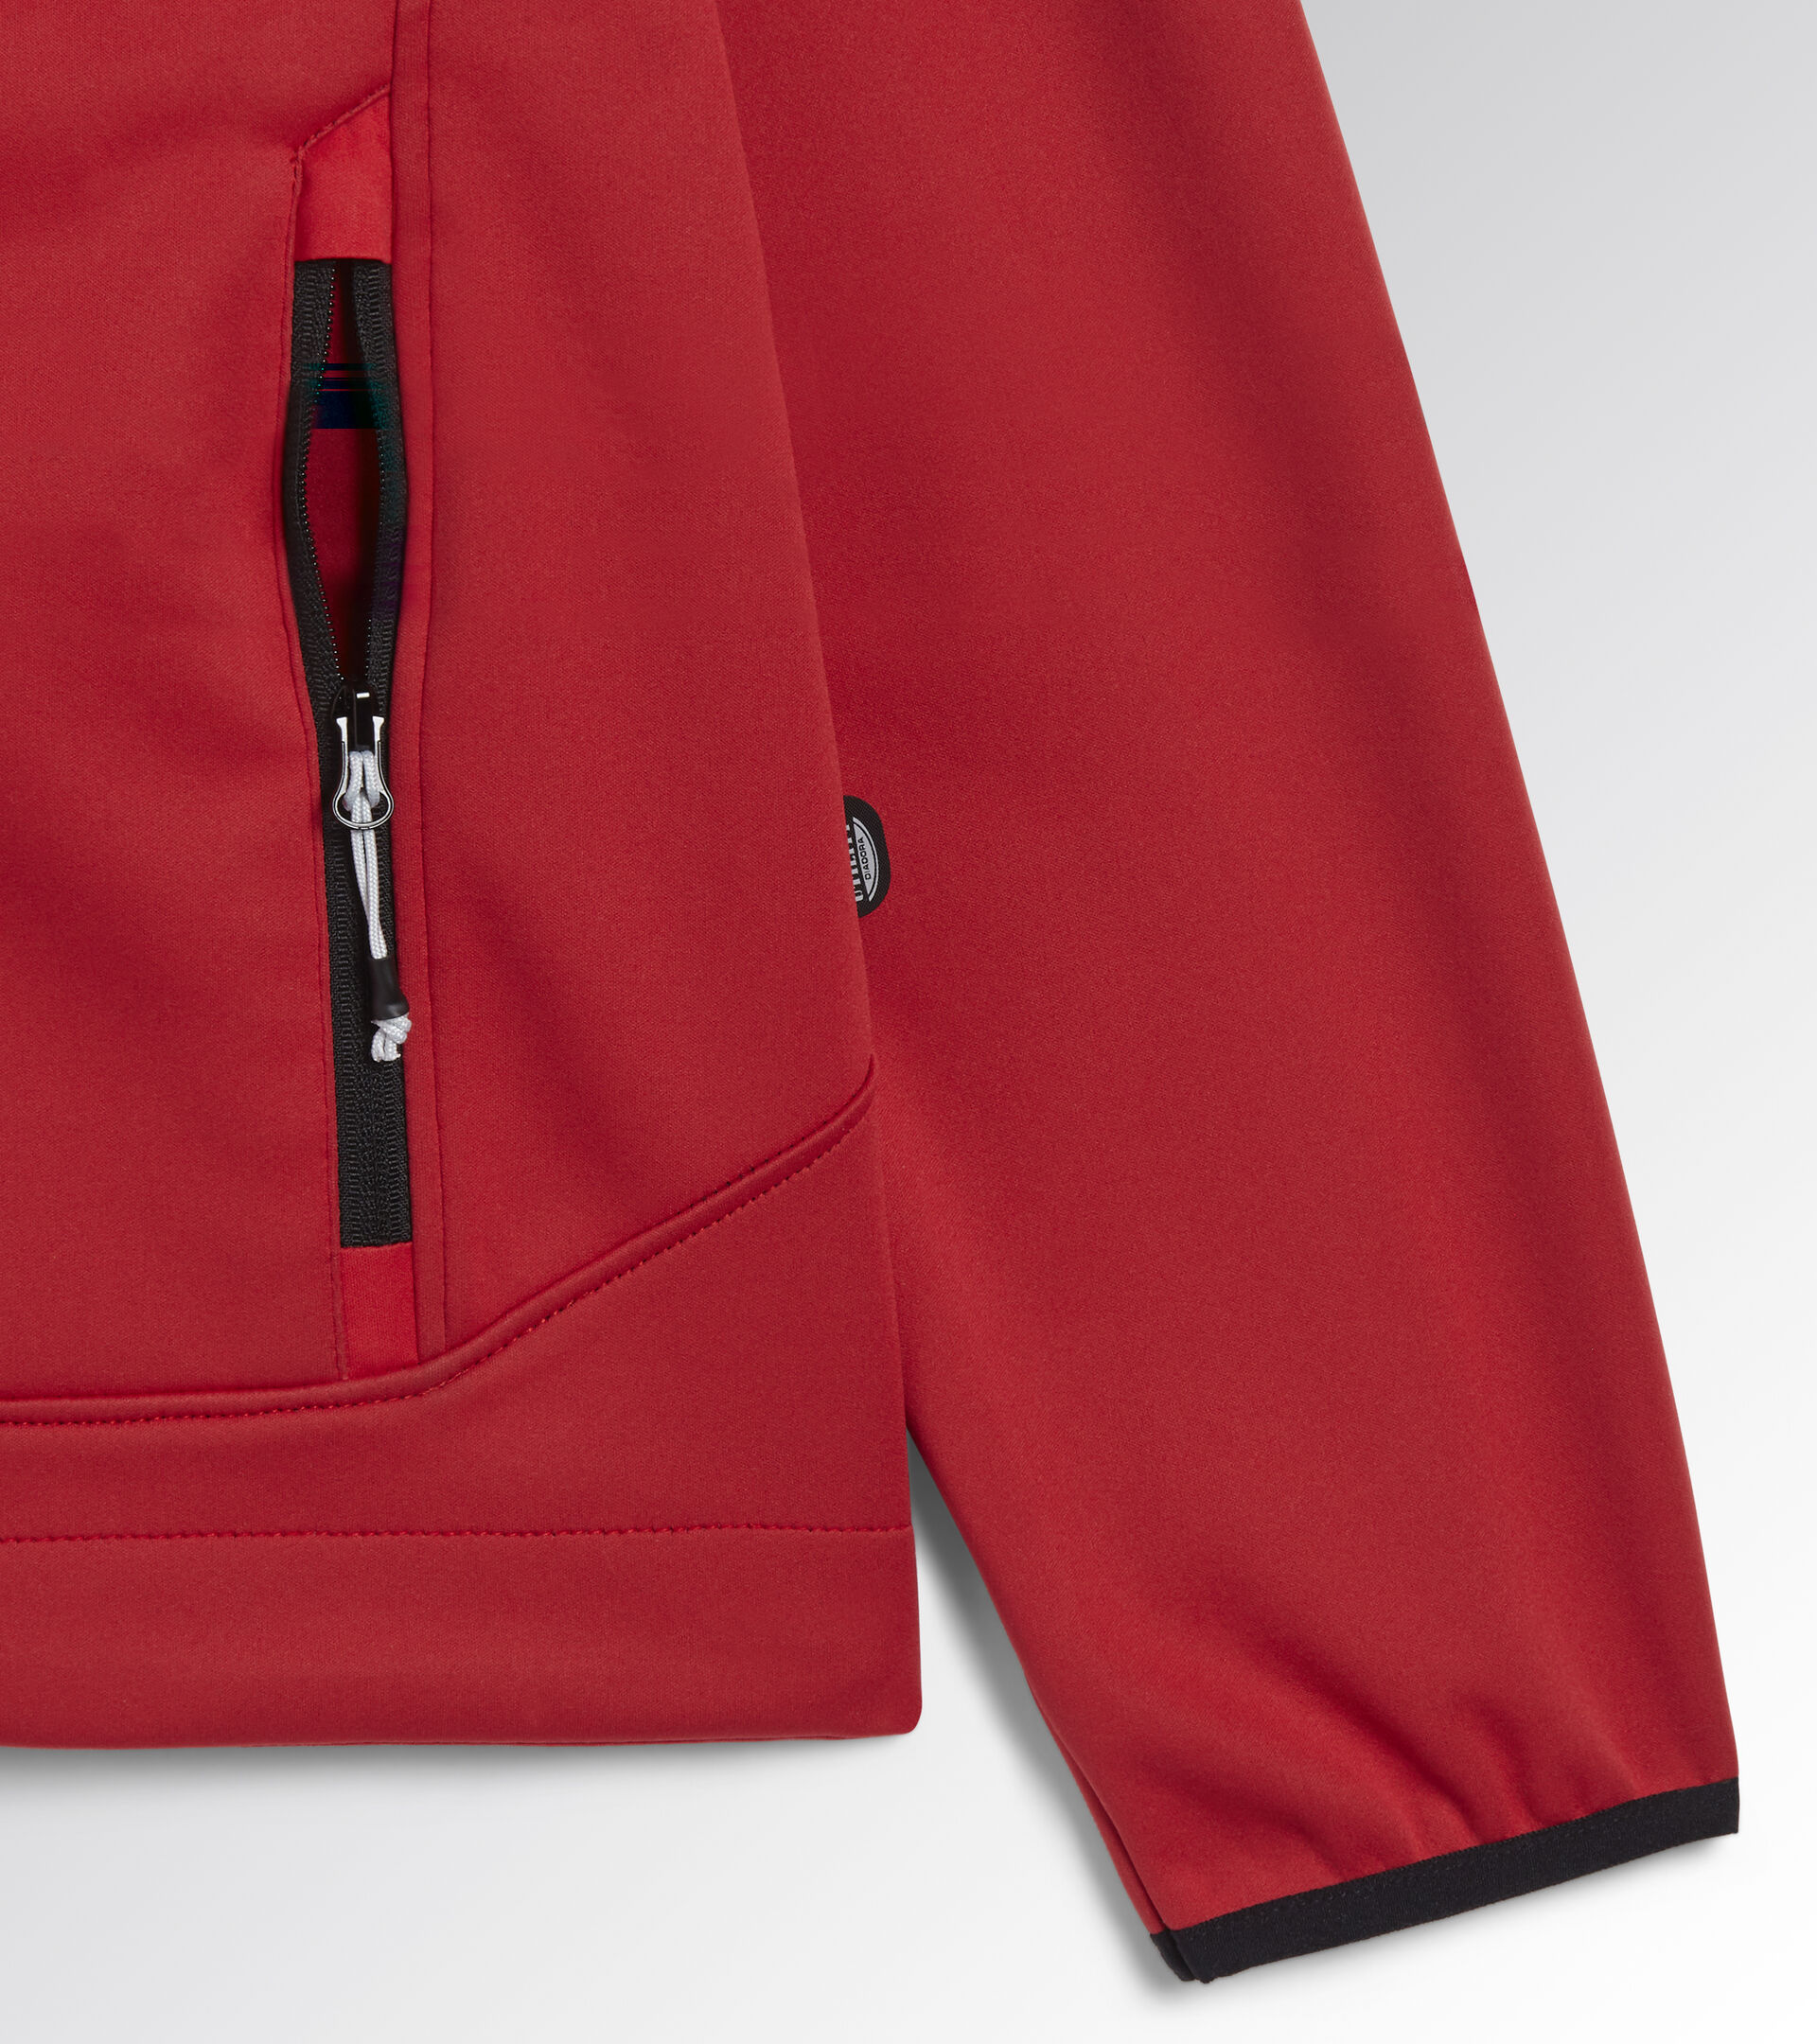 Work jacket SOFTSHELL ATHENA CHINESE RED/BLACK - Utility